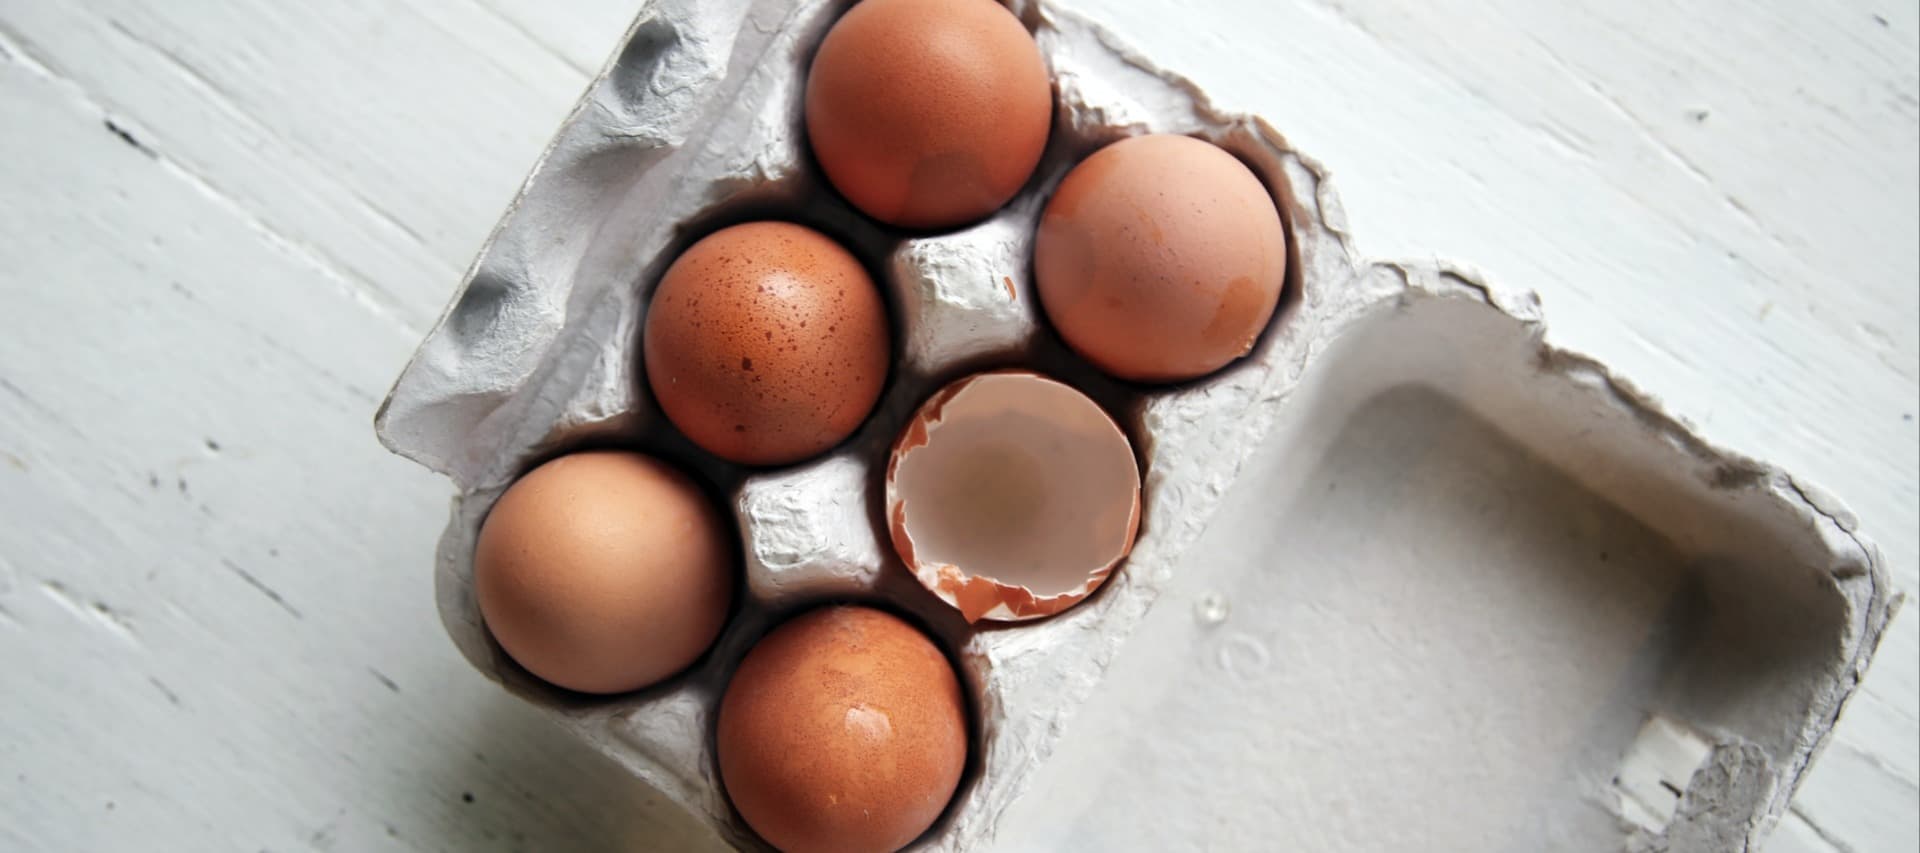 Фото новости: "Яйца за неделю подорожали на 4,62%"